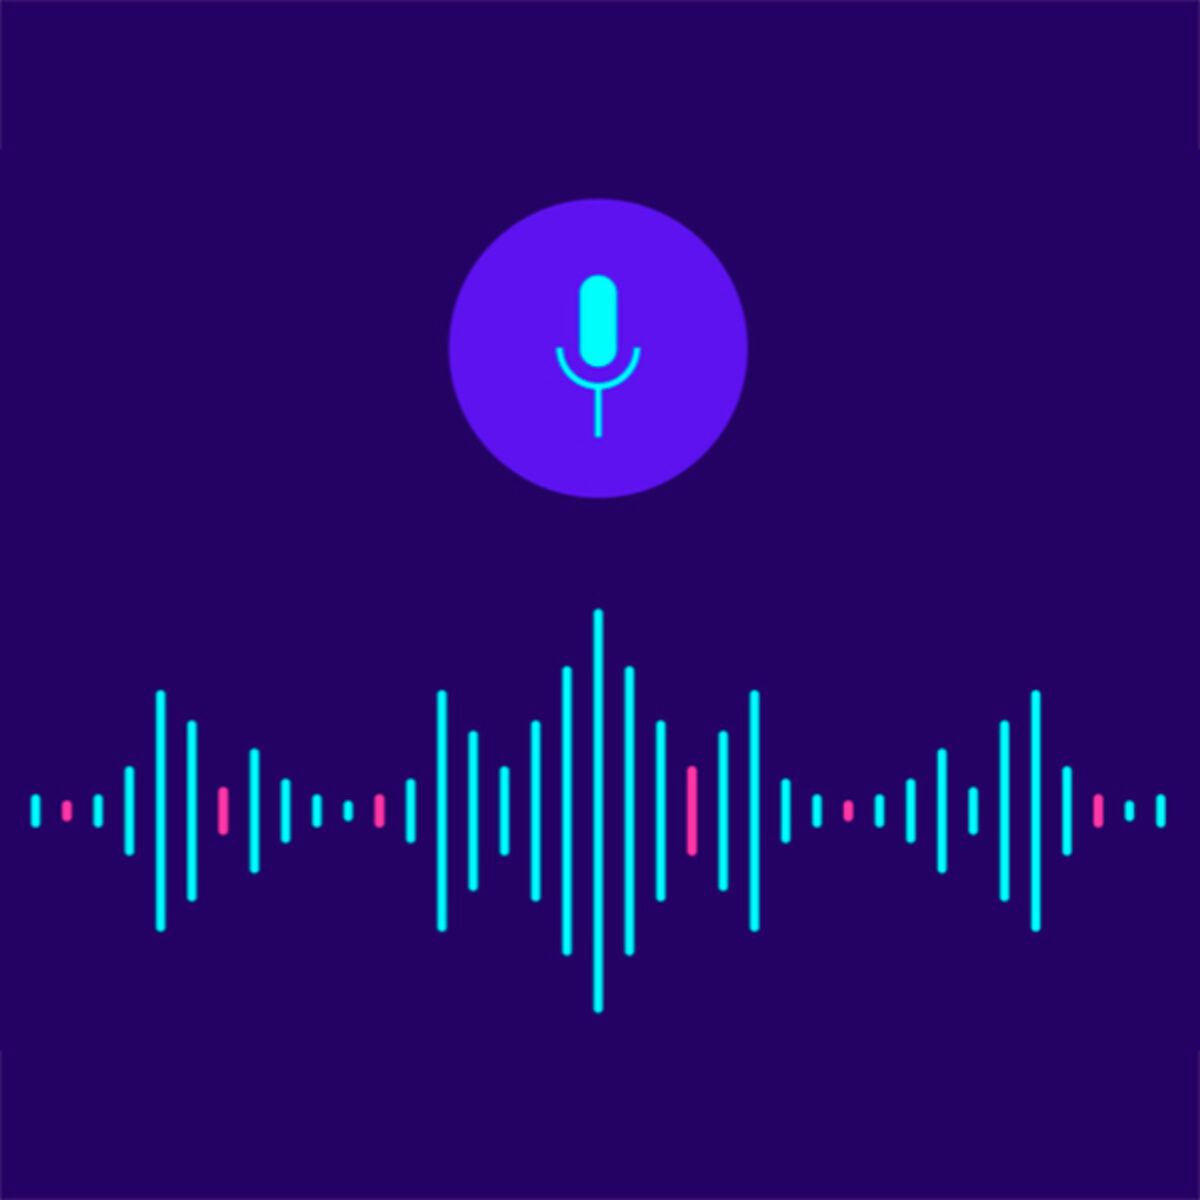 text-to-speech app for mac